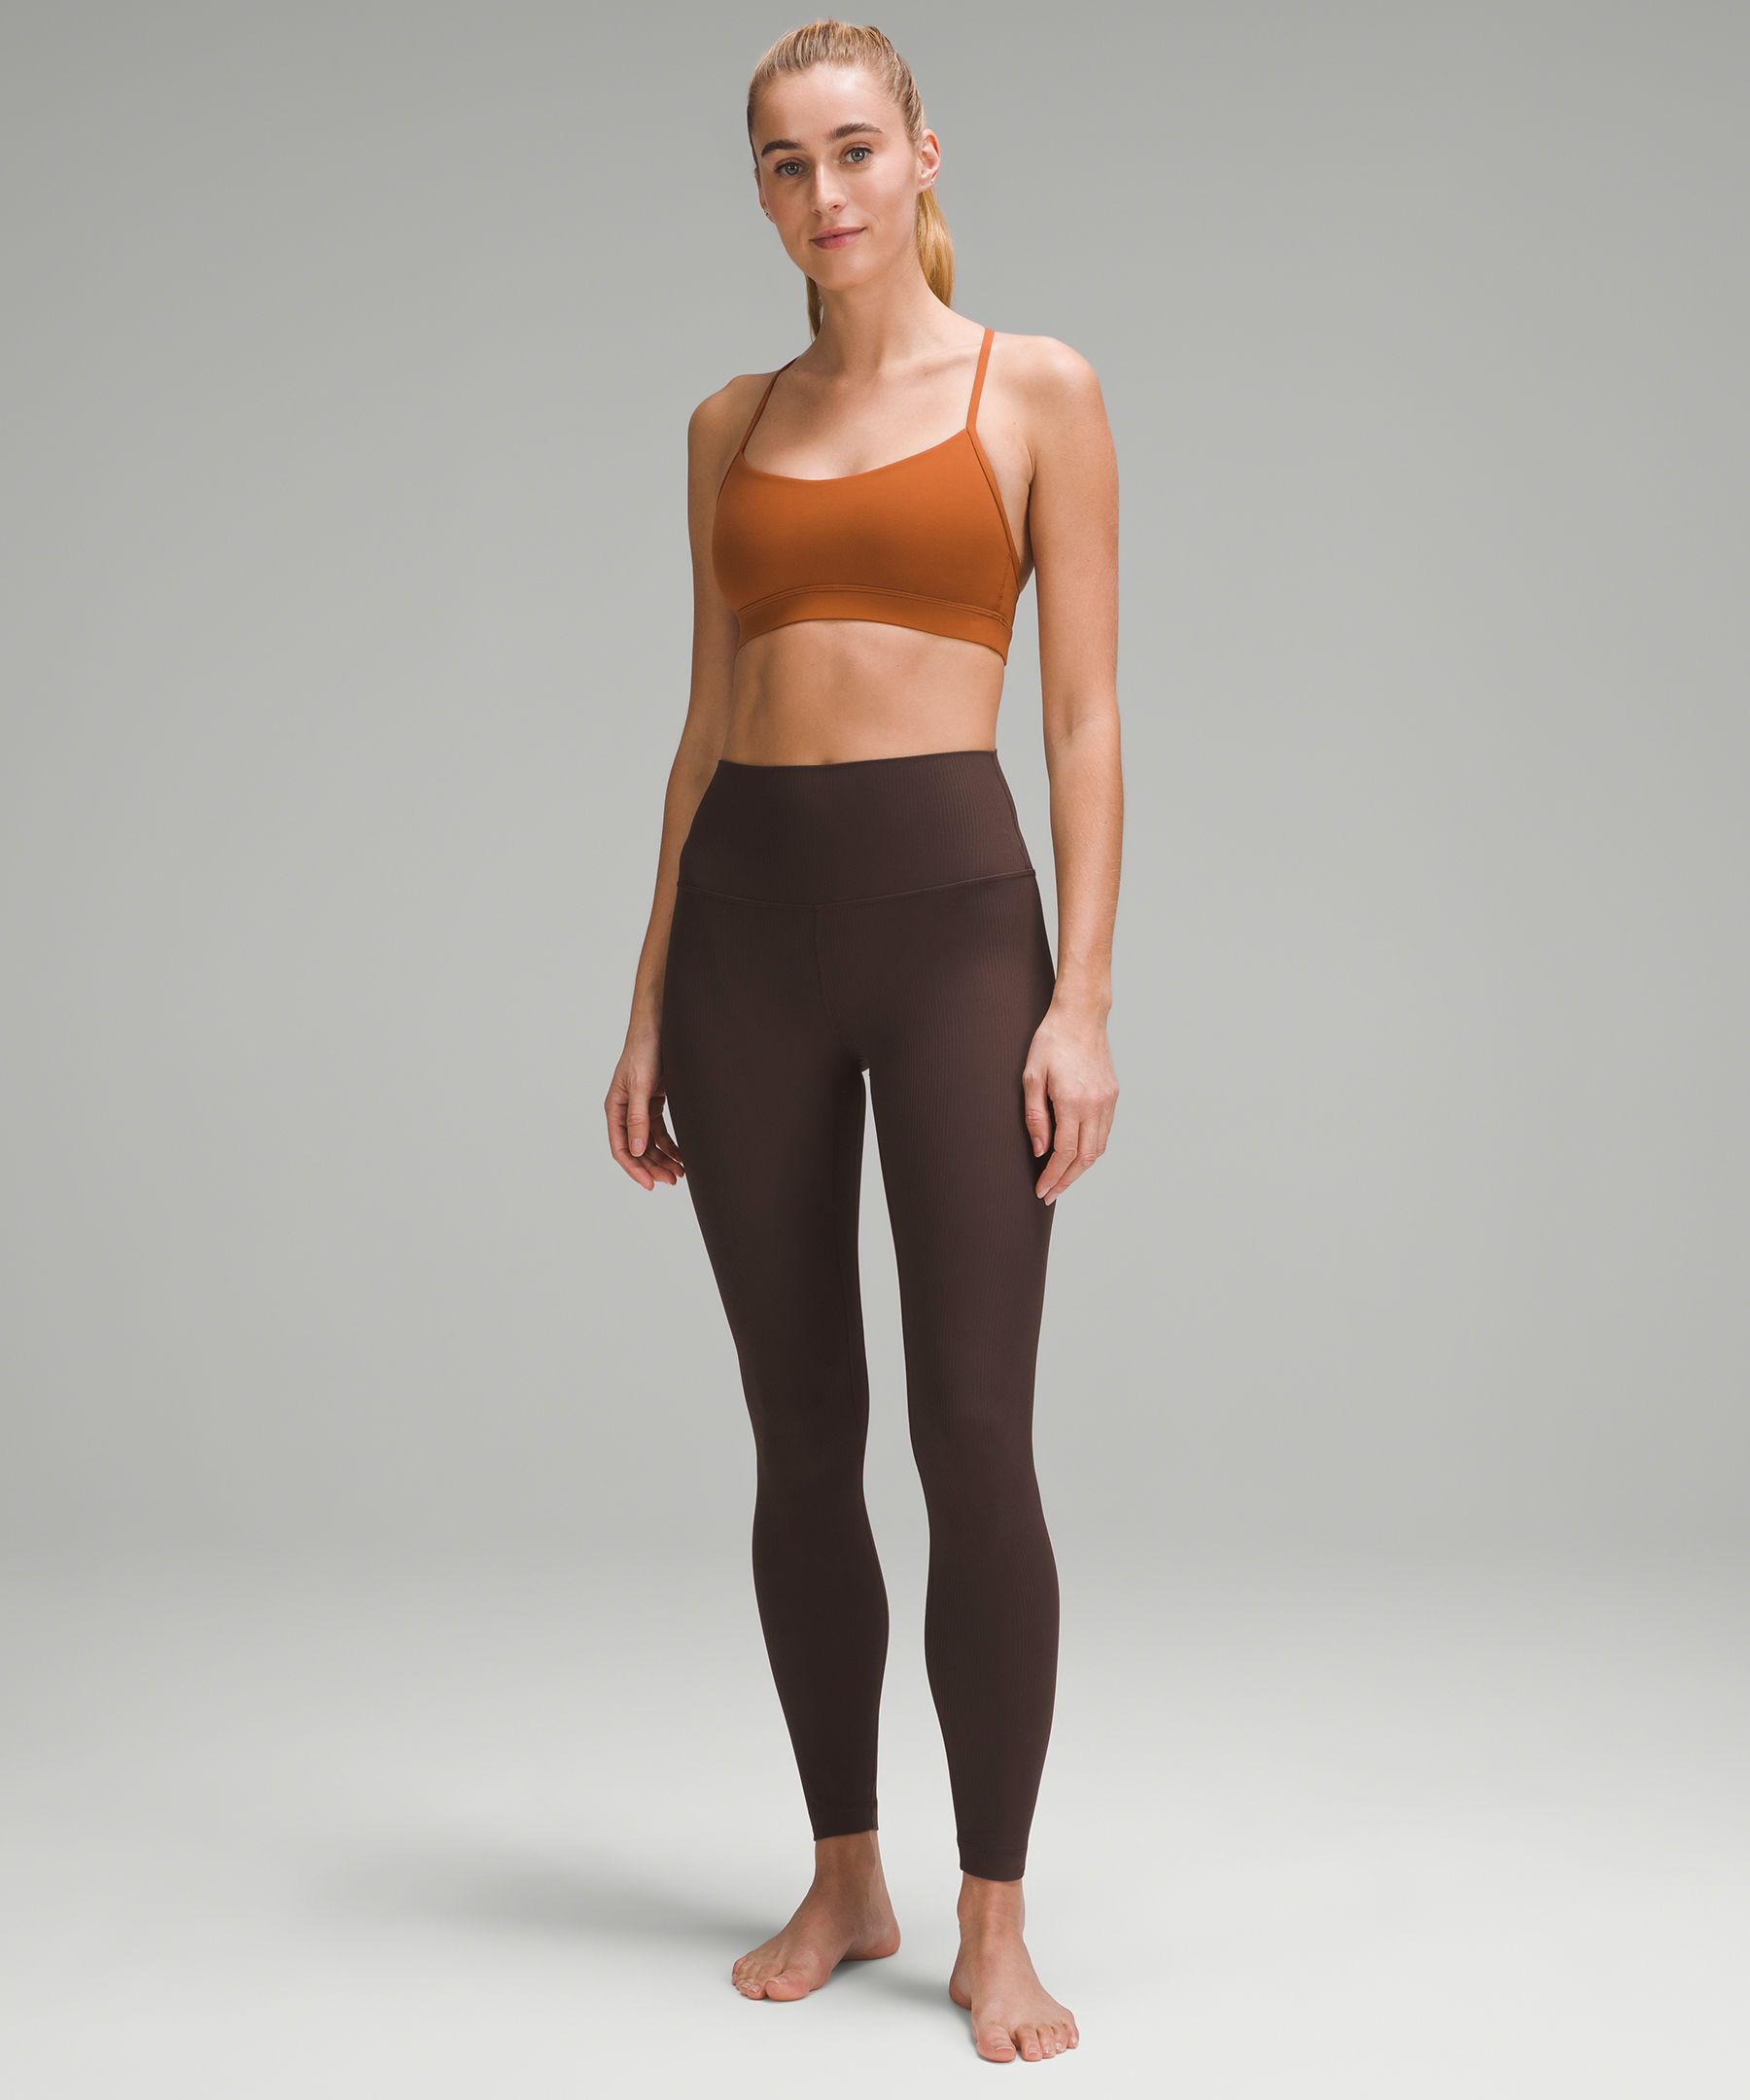 Lululemon Align Yoga Pant 2-8 Size 25 Gray India